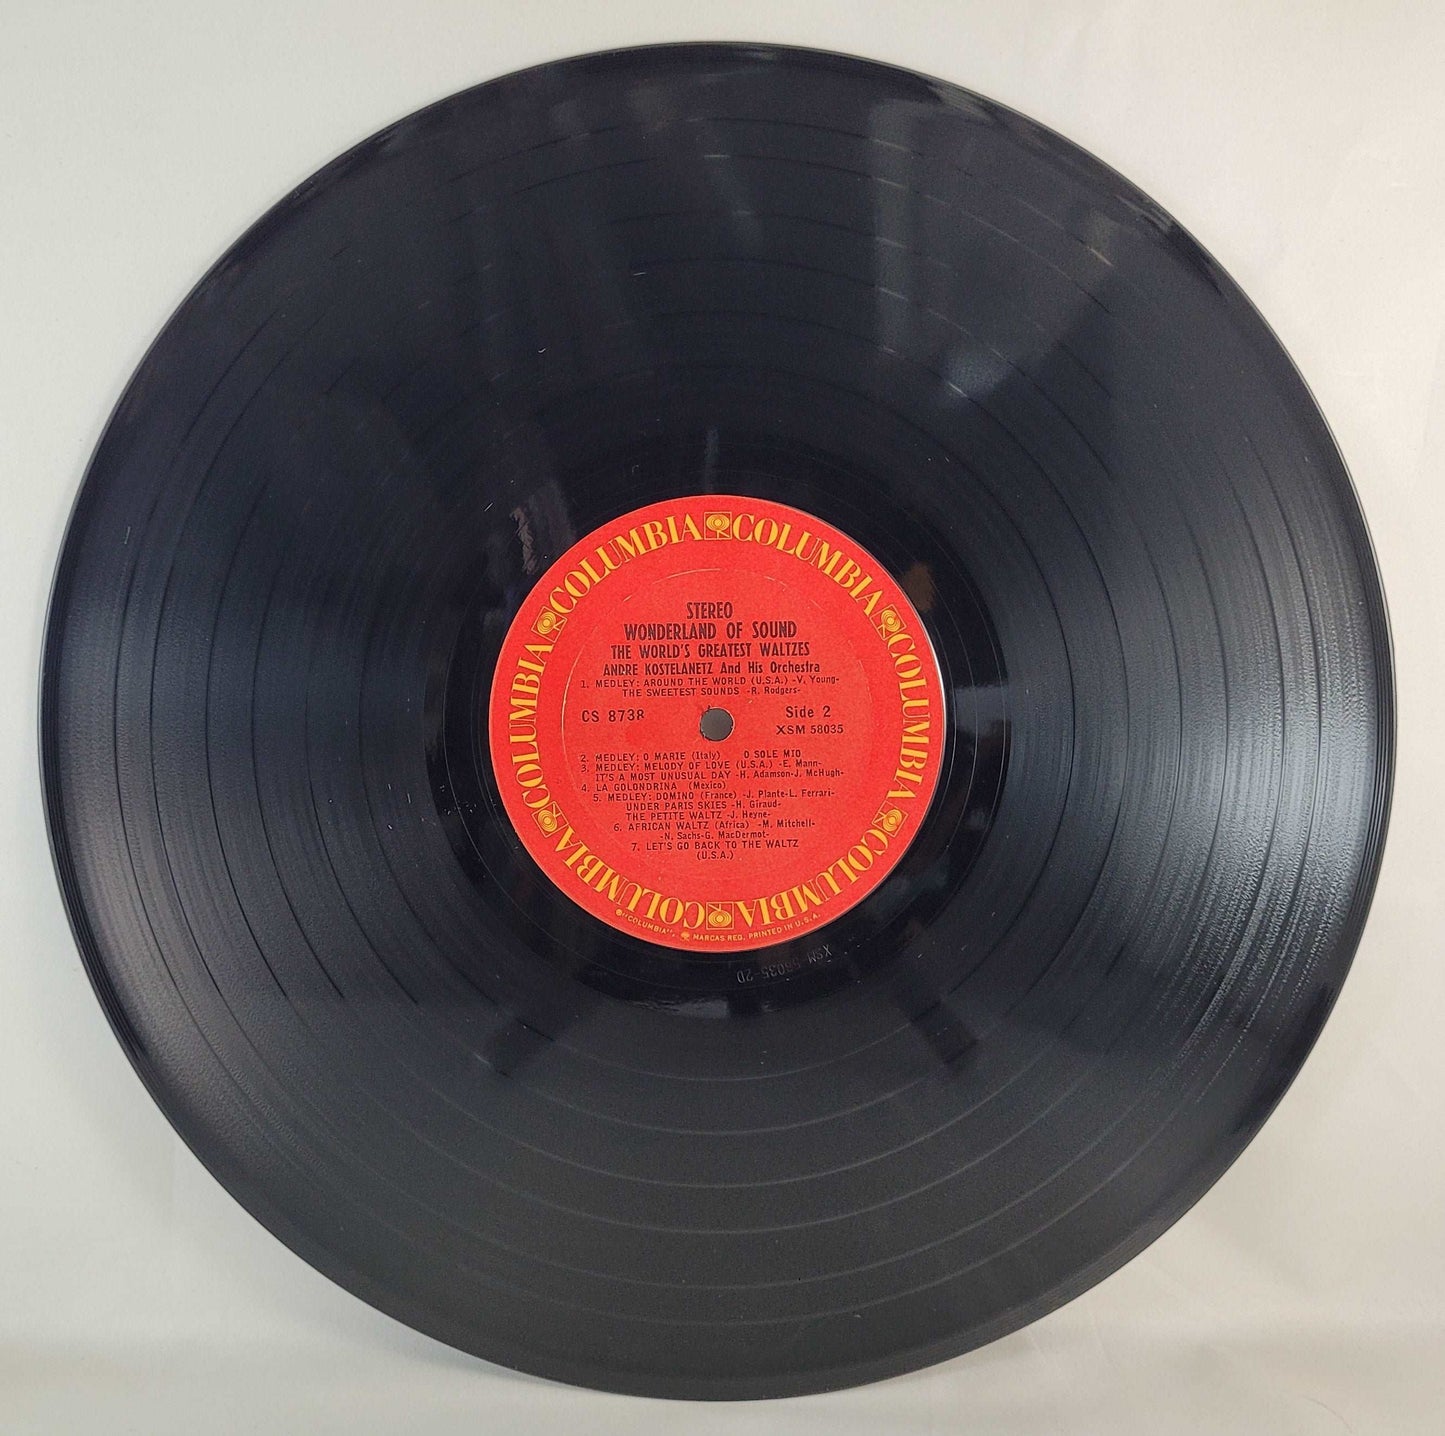 Andre Kostelanetz - Wonderland of Sound - The World's Greatest Waltzes [Vinyl Record LP]